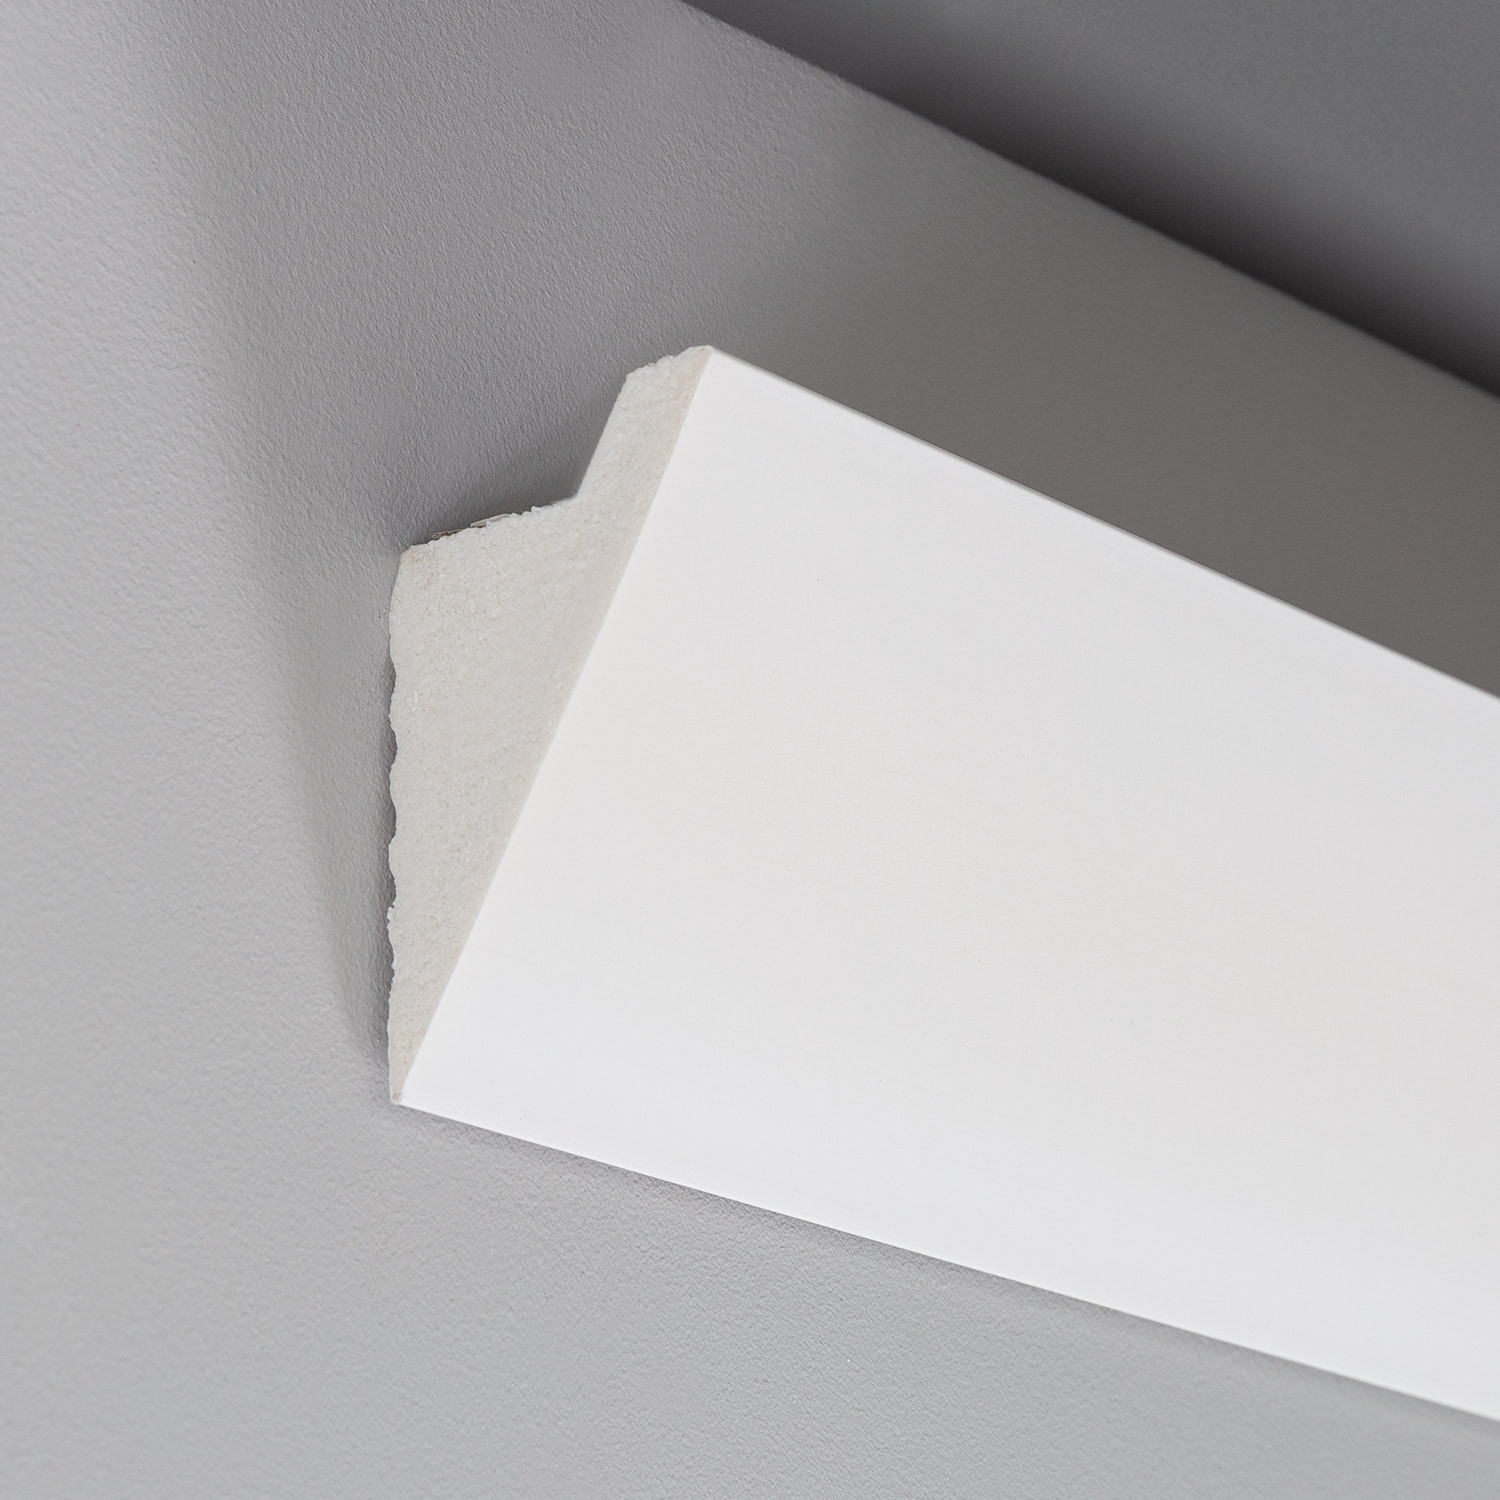 Molduras de techo LED para Iluminación Difusa - efectoLED